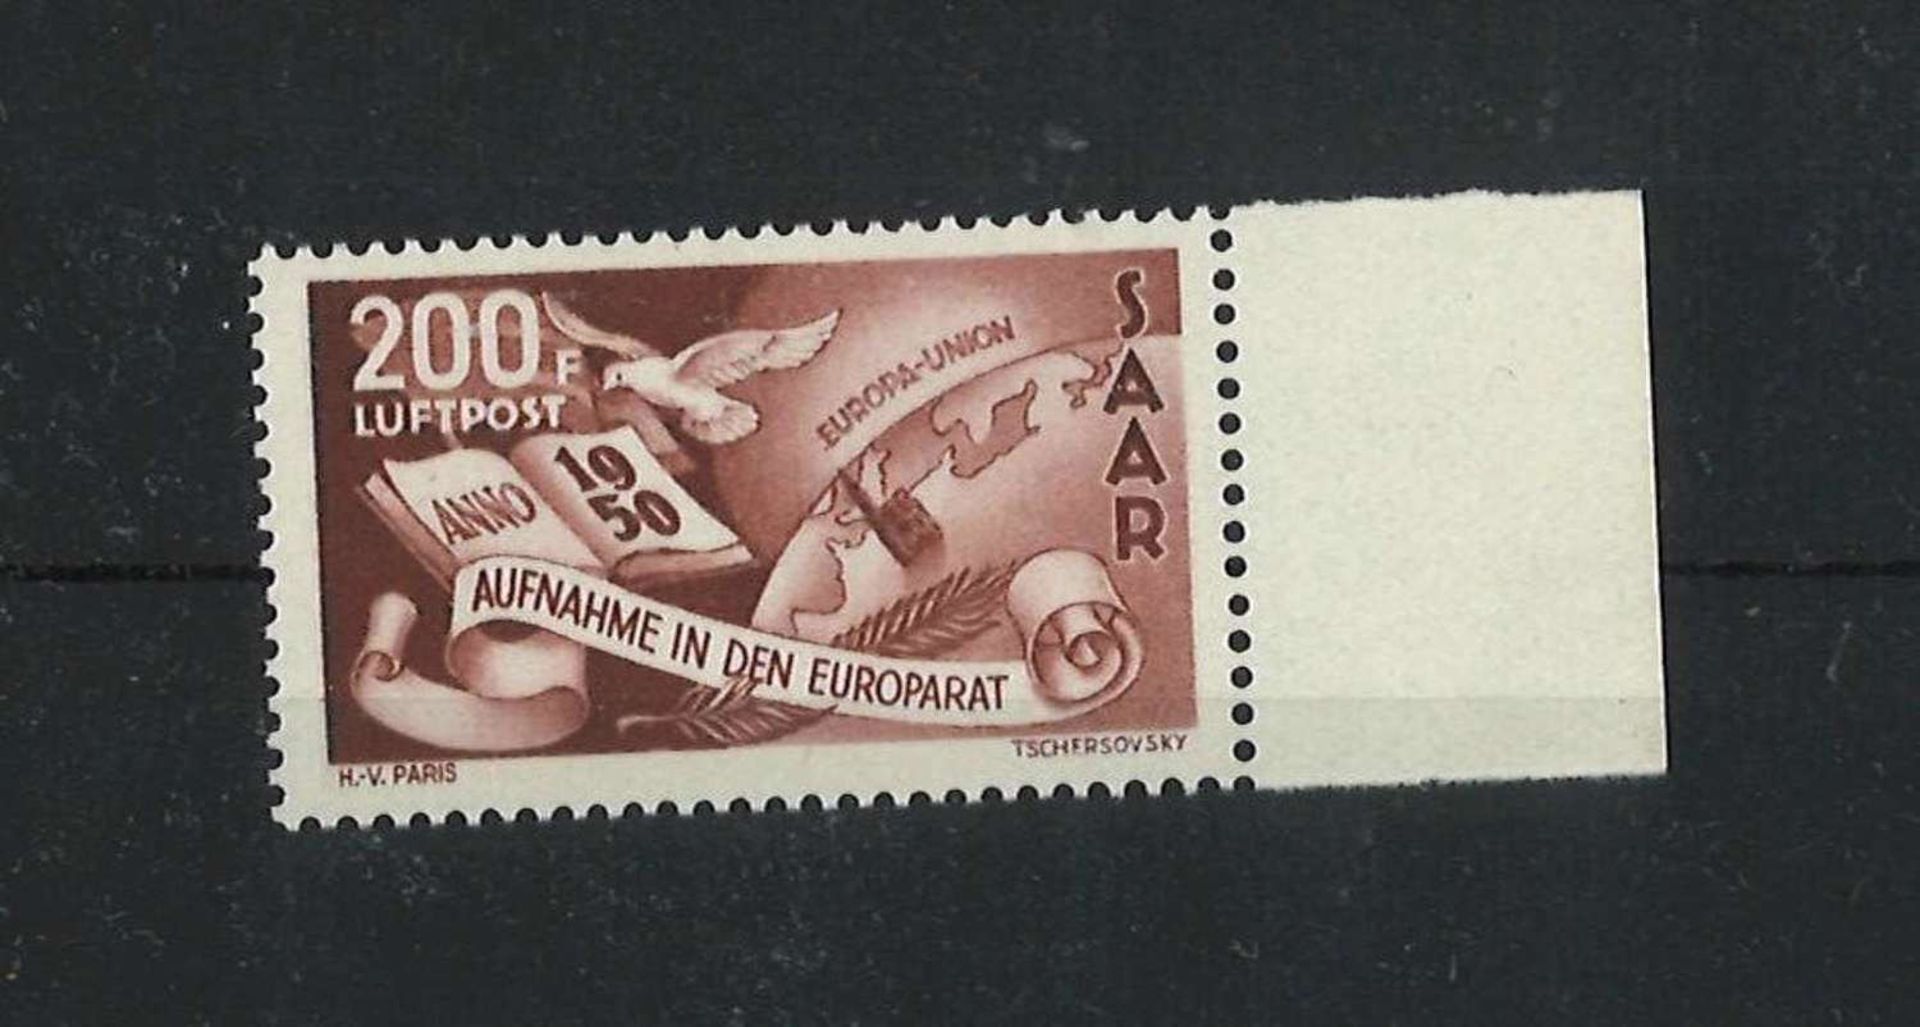 Saarland 1950, Mi 296, Flugpostmarke, postfrischSaarland 1950, Mi 296, airmail stamp, mint never